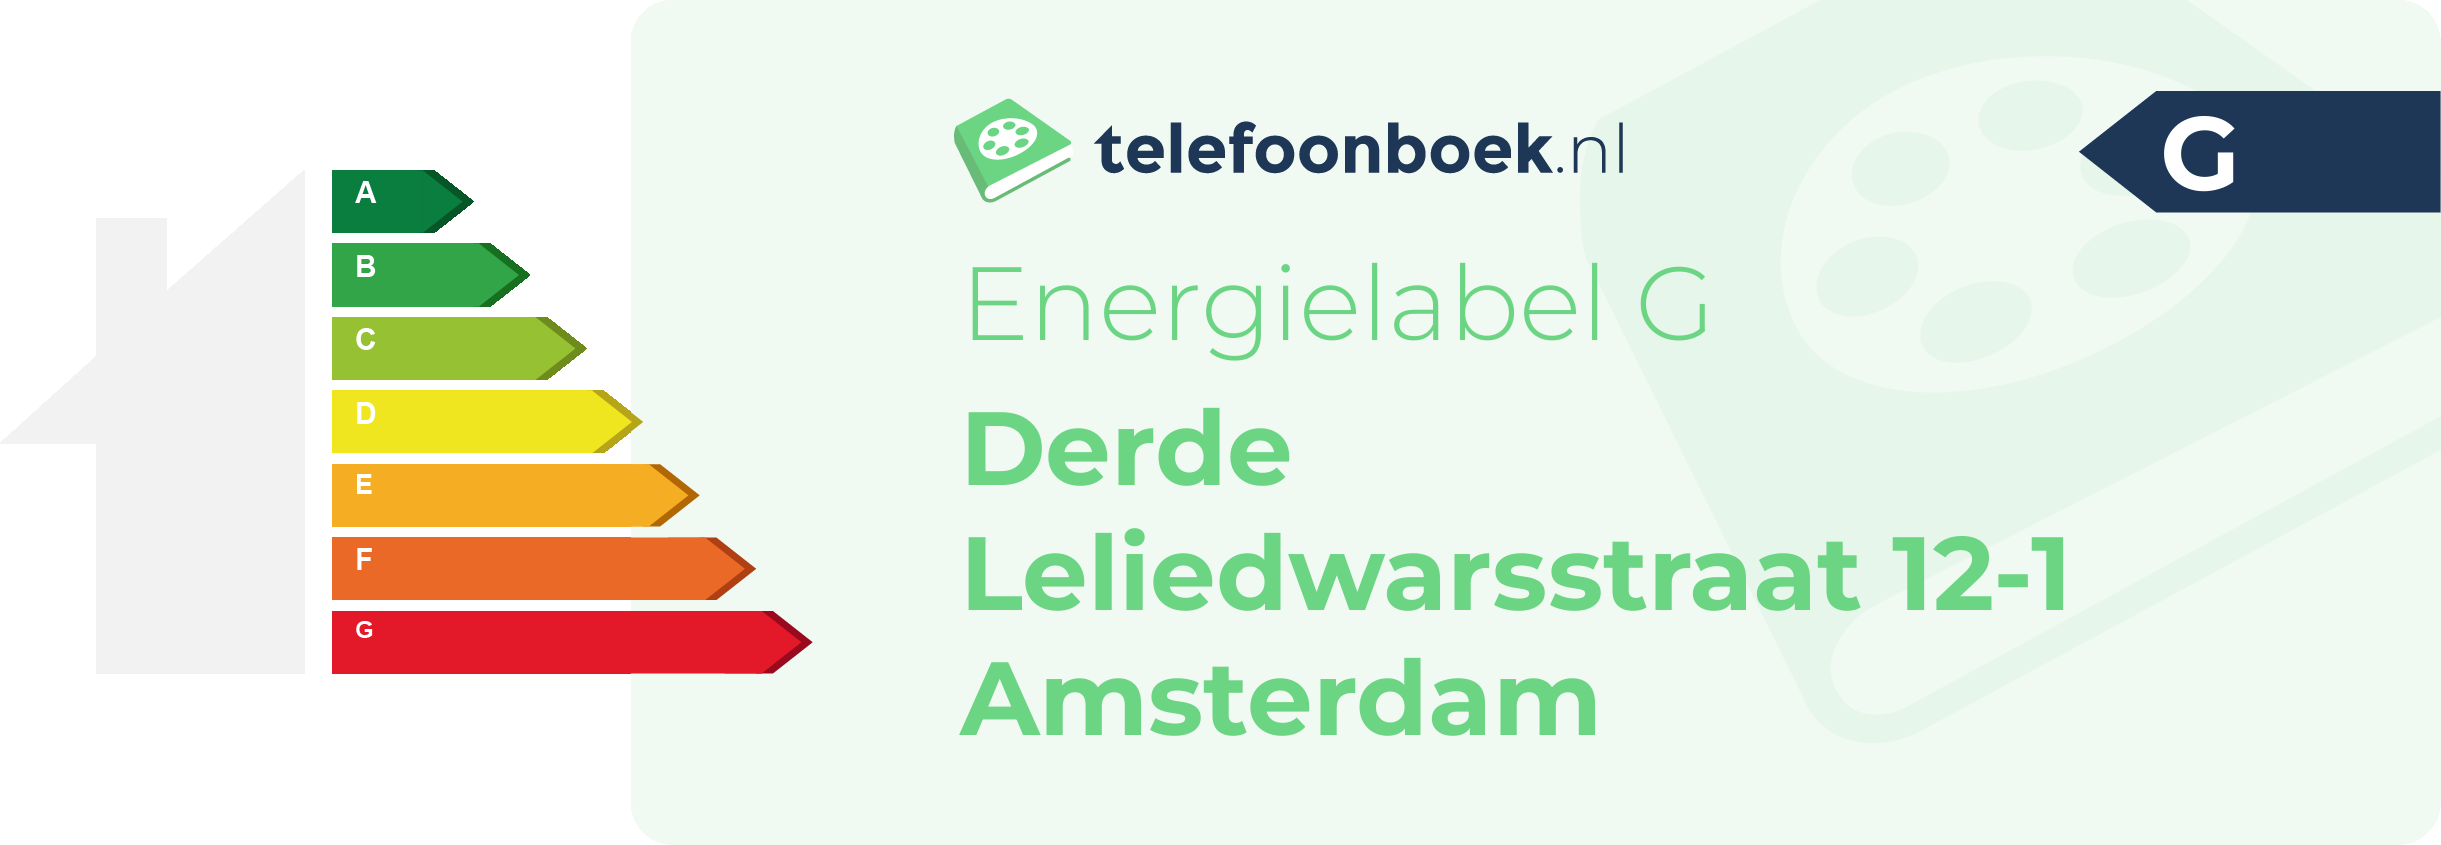 Energielabel Derde Leliedwarsstraat 12-1 Amsterdam